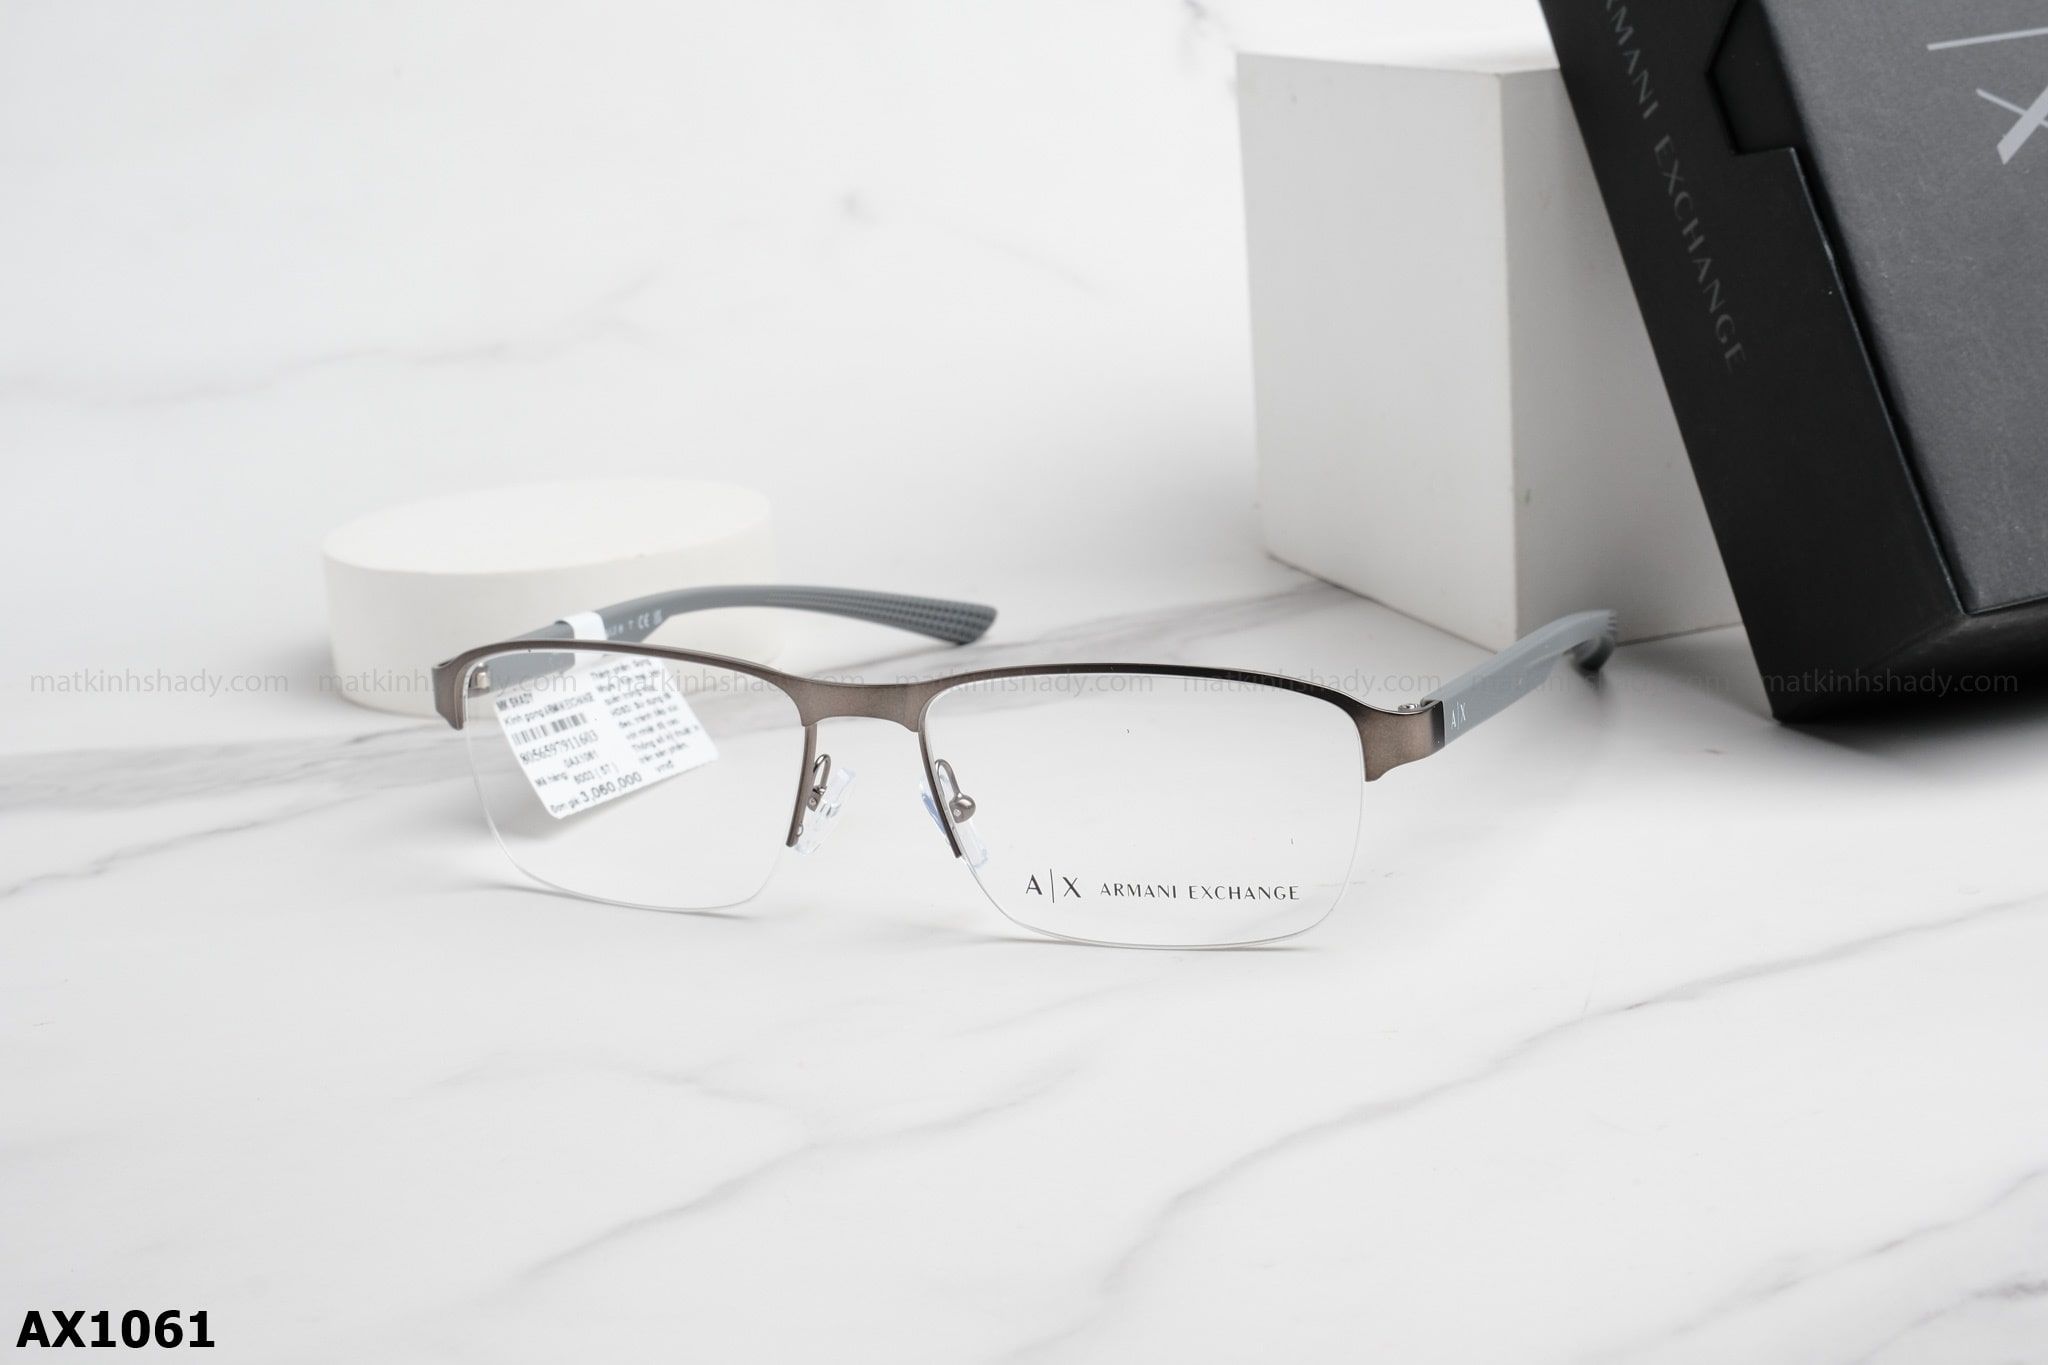  Armani Exchange Eyewear - Glasses - AX1061 